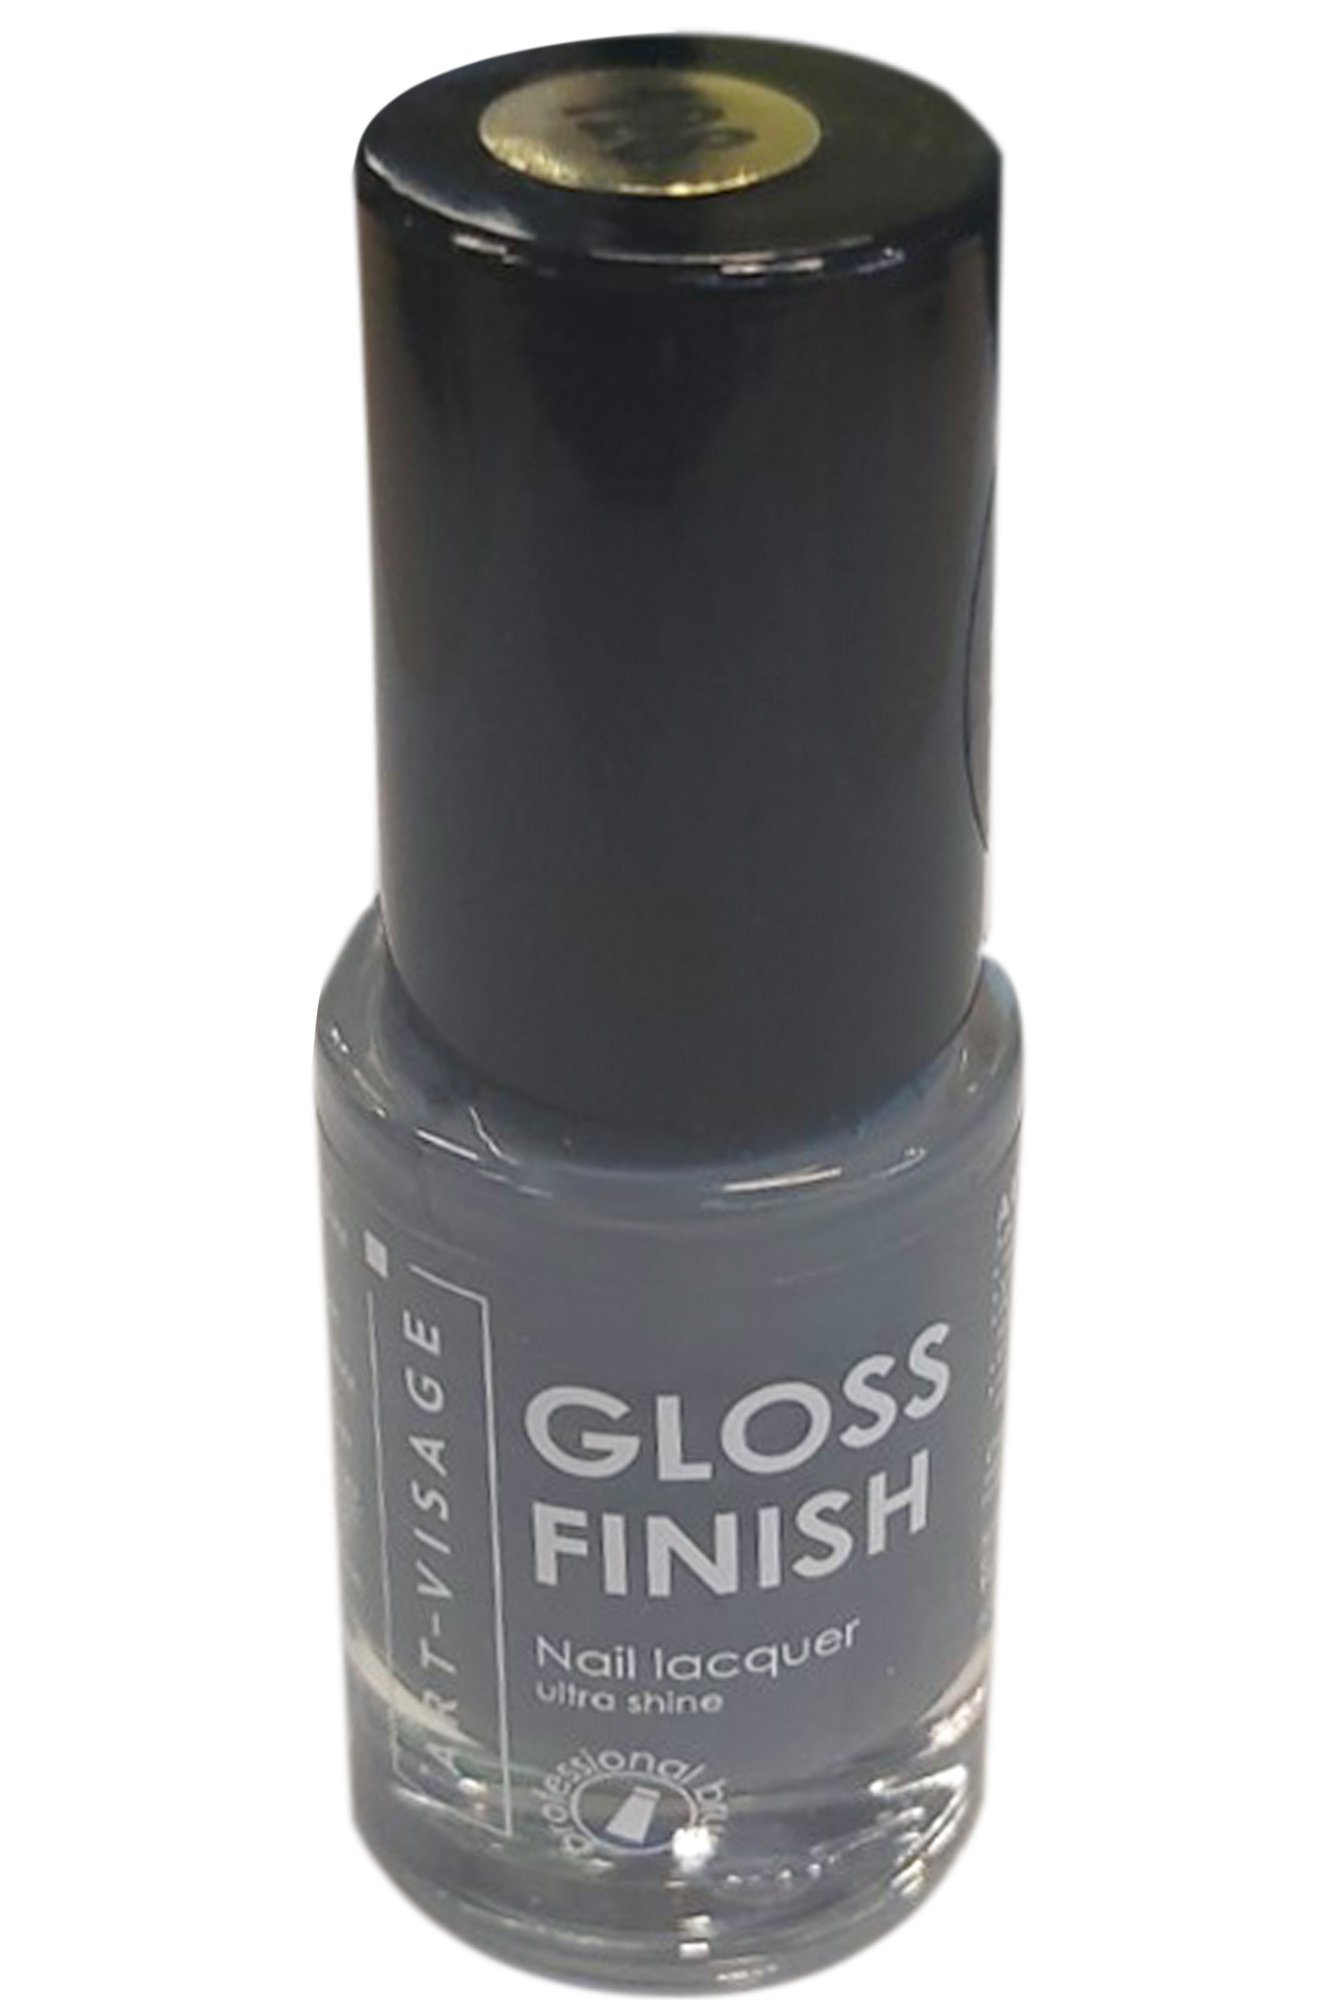 Лак для ногтей Gloss Finish т.121 графит 8,5 мл Art-Visage